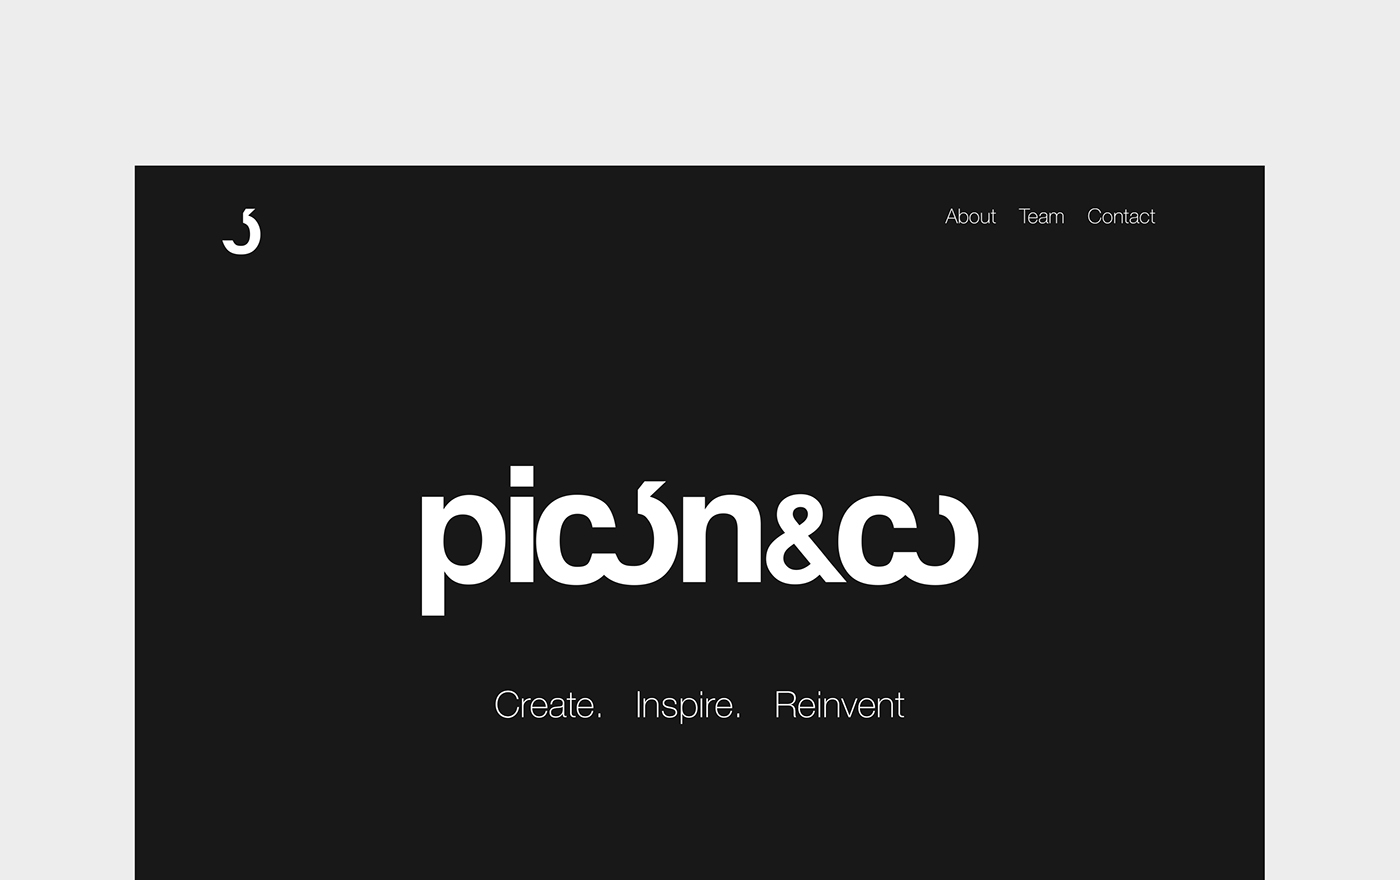 public relations art art curator miami picon and co Web Design  UI ux minimal inspire